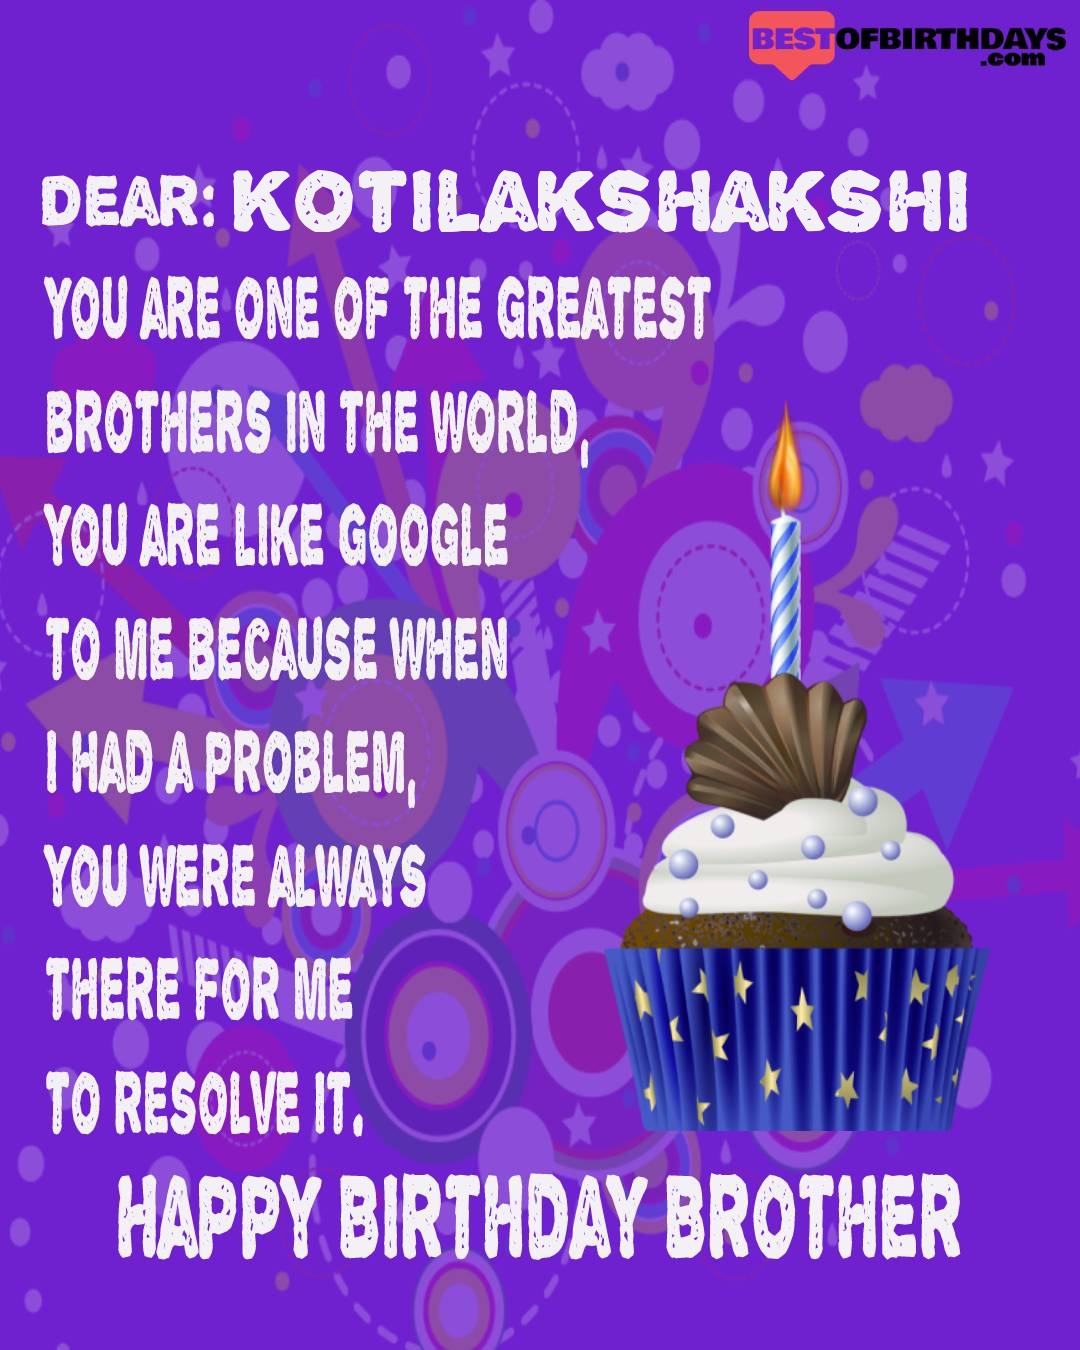 Happy birthday kotilakshakshi bhai brother bro